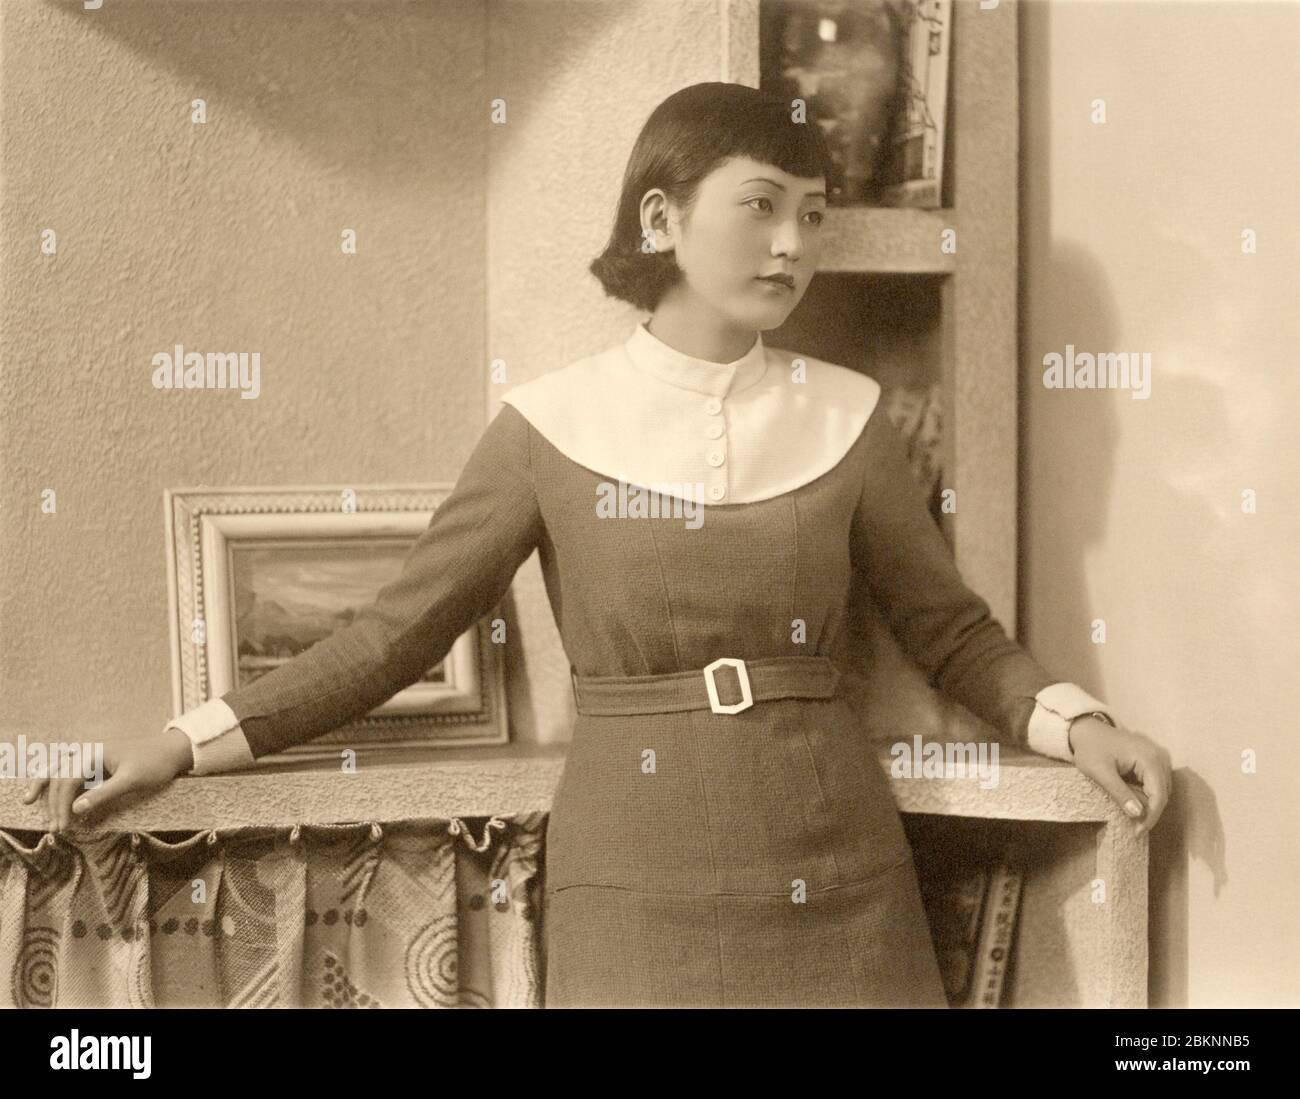 [ 1930er Jahre Japan - Junge japanische Frau ] - Junge japanische Frau in modernem Kleid und Frisur. Silberdruck mit Vintage-Gelatine aus dem 20. Jahrhundert. Stockfoto